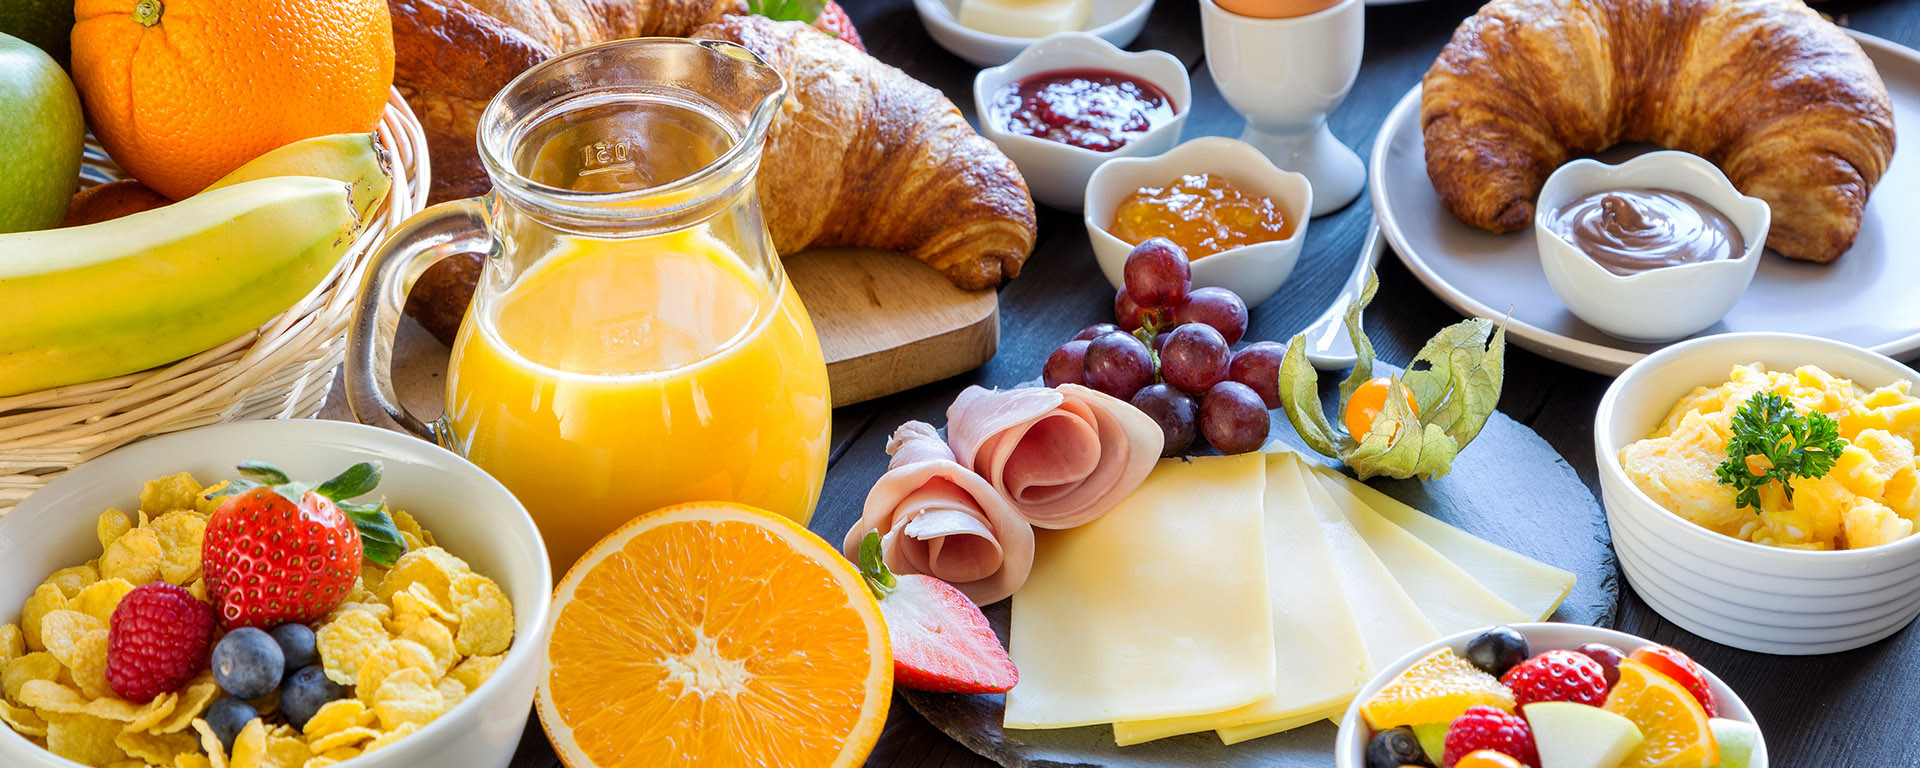 HEGAU-TOWER HOTEL : Starten Sie mit unserem Frühstücksbuffet in den Tag!